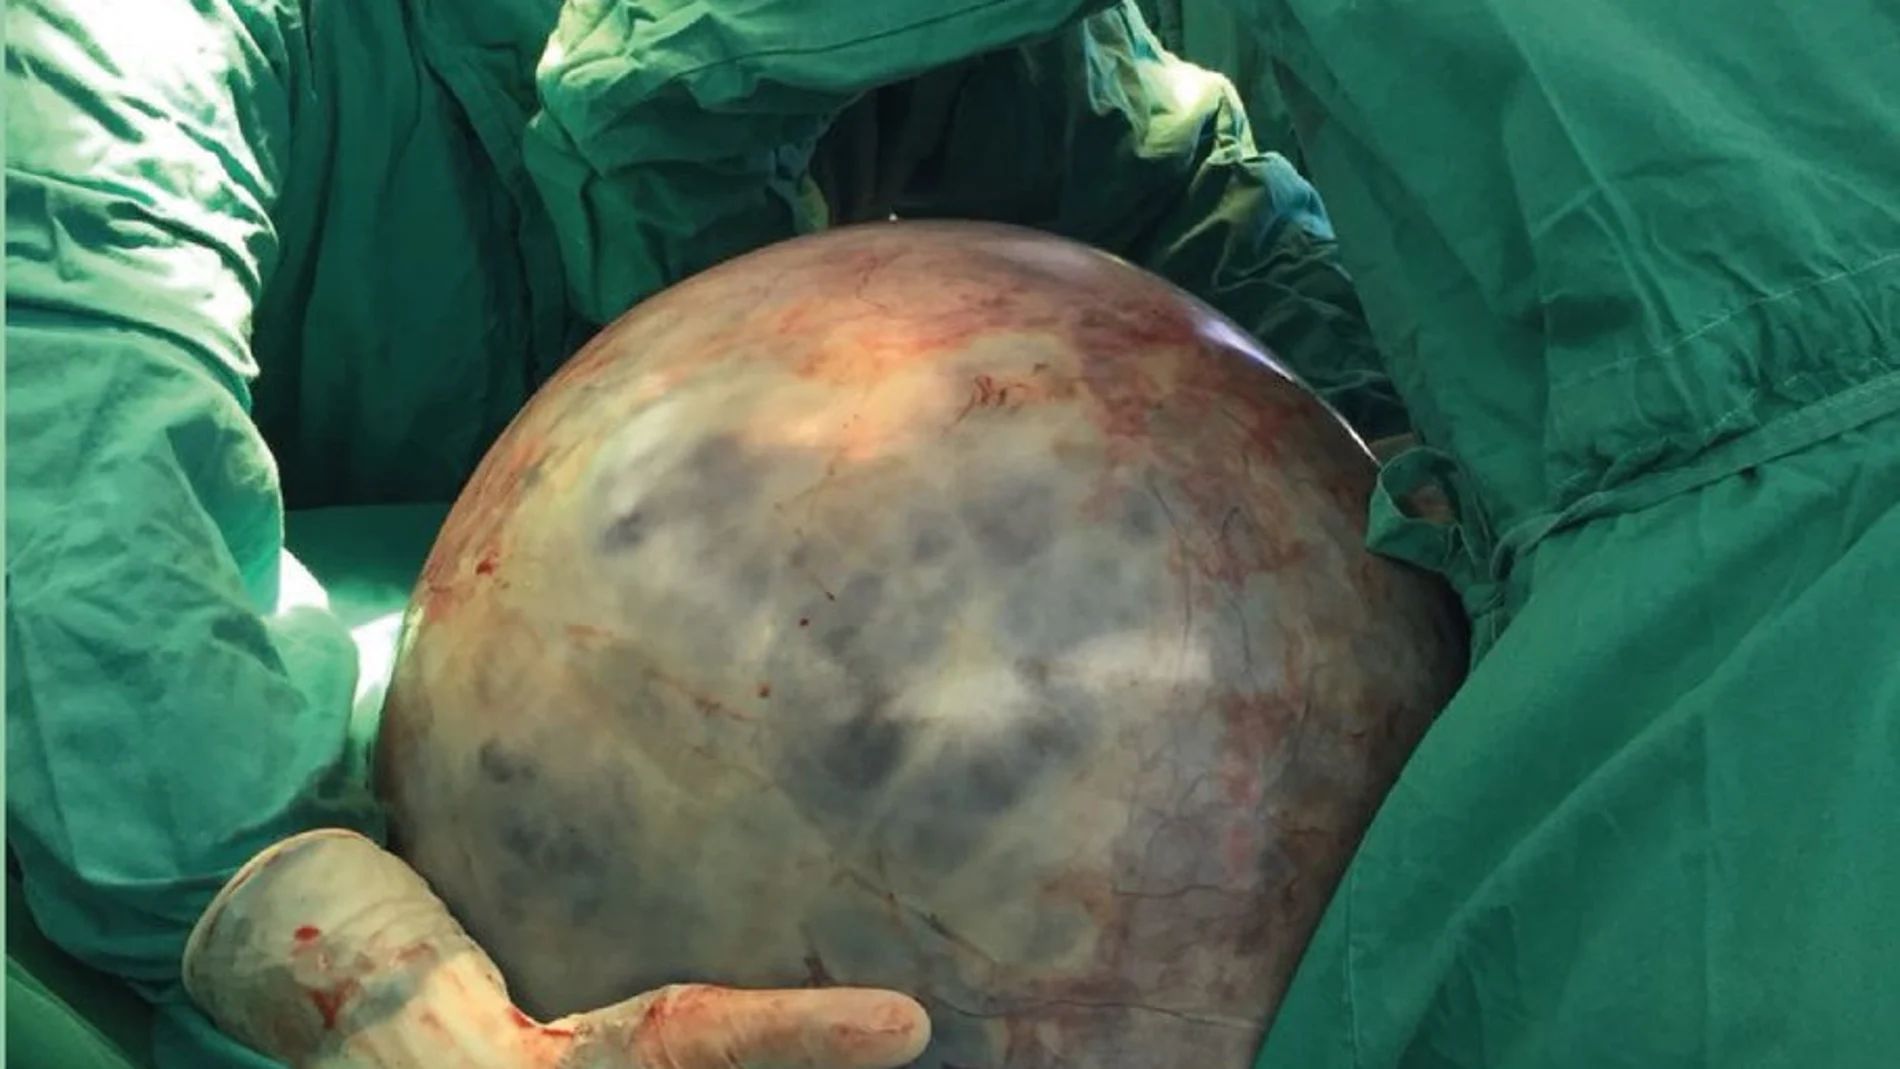 El tumor de 34 kilos